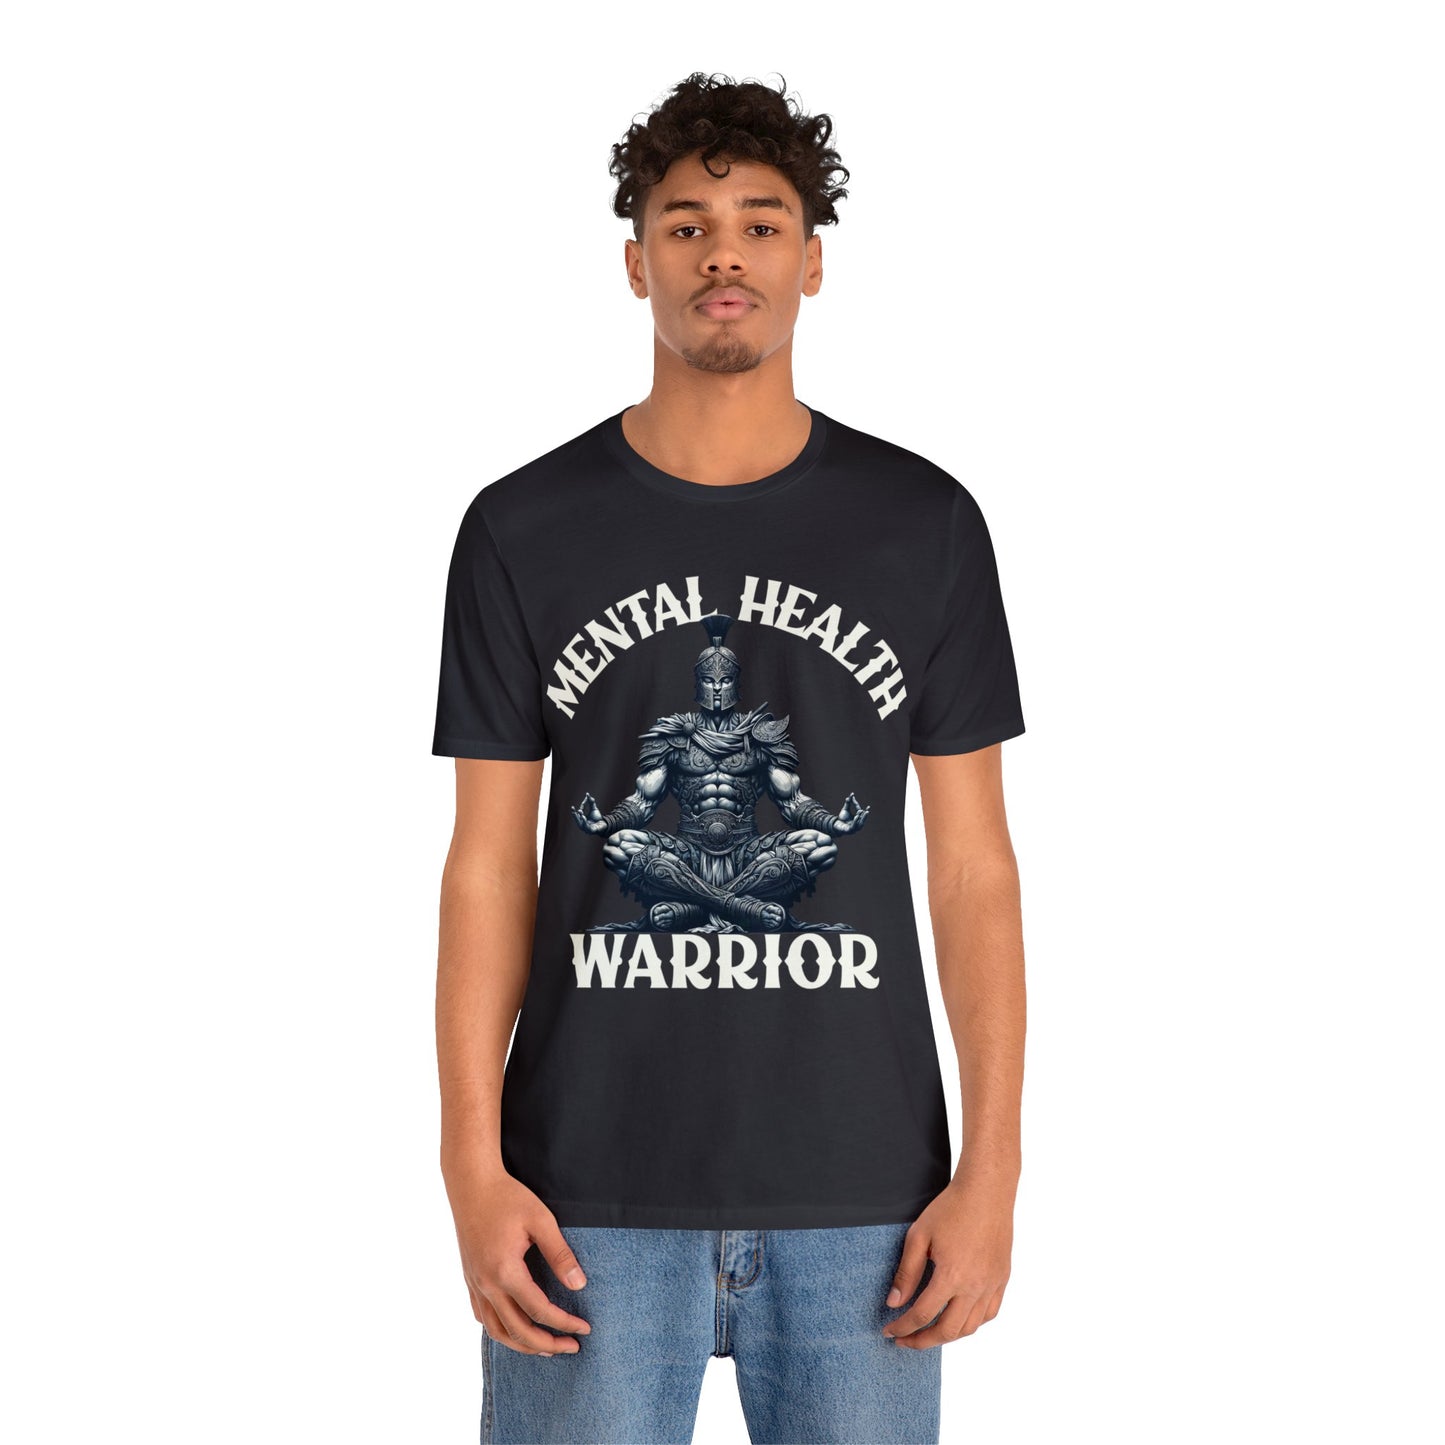 Mental Health Warrior Shirt, Awareness, Positivity, Motivational, Inspire